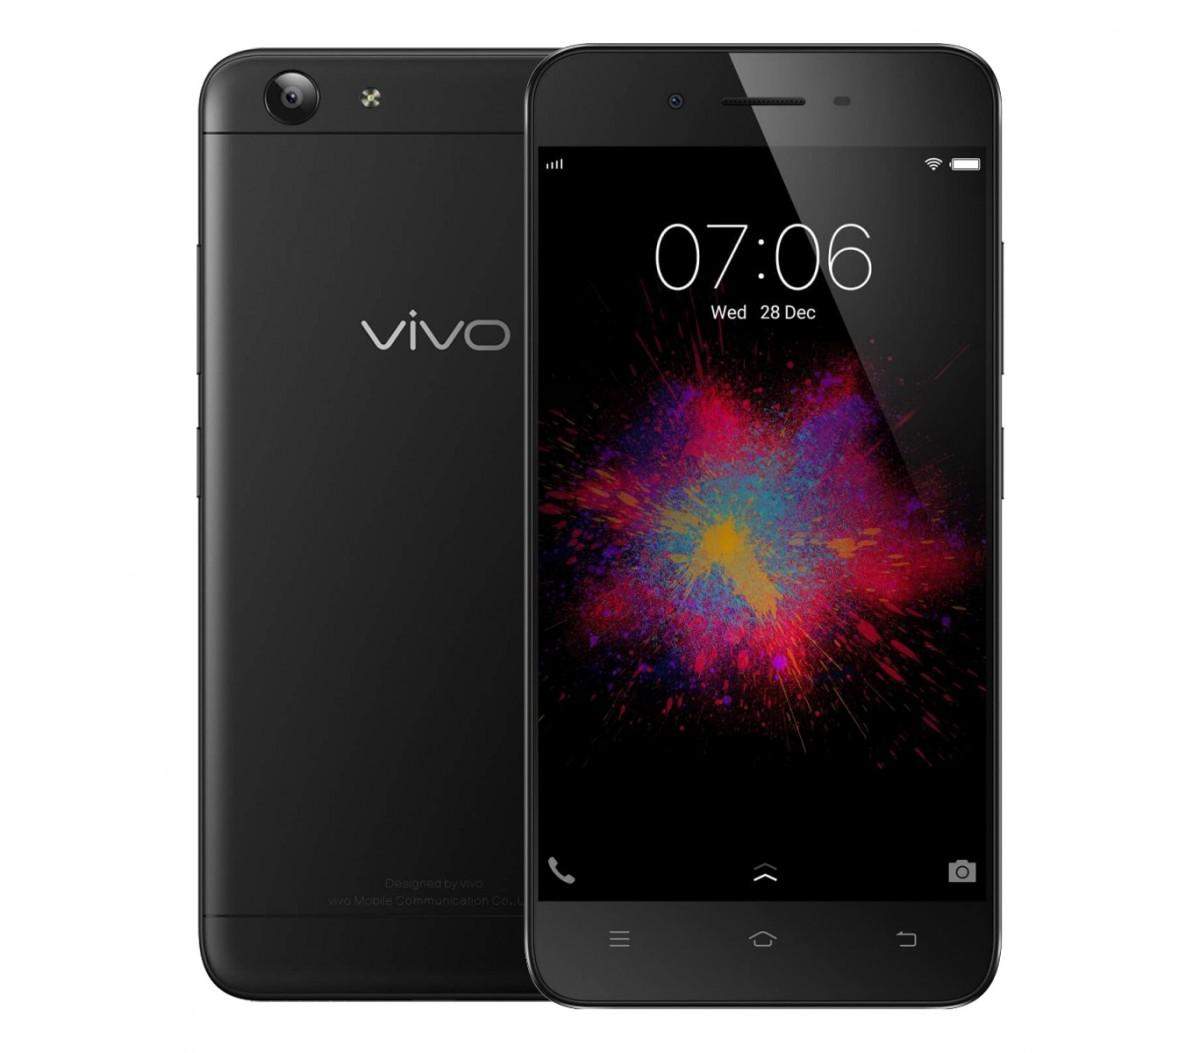 वीवो के स्मार्टफोन वीवो वाई53 की कीमत में गिरावट आयी, जानिये पूरी खबर